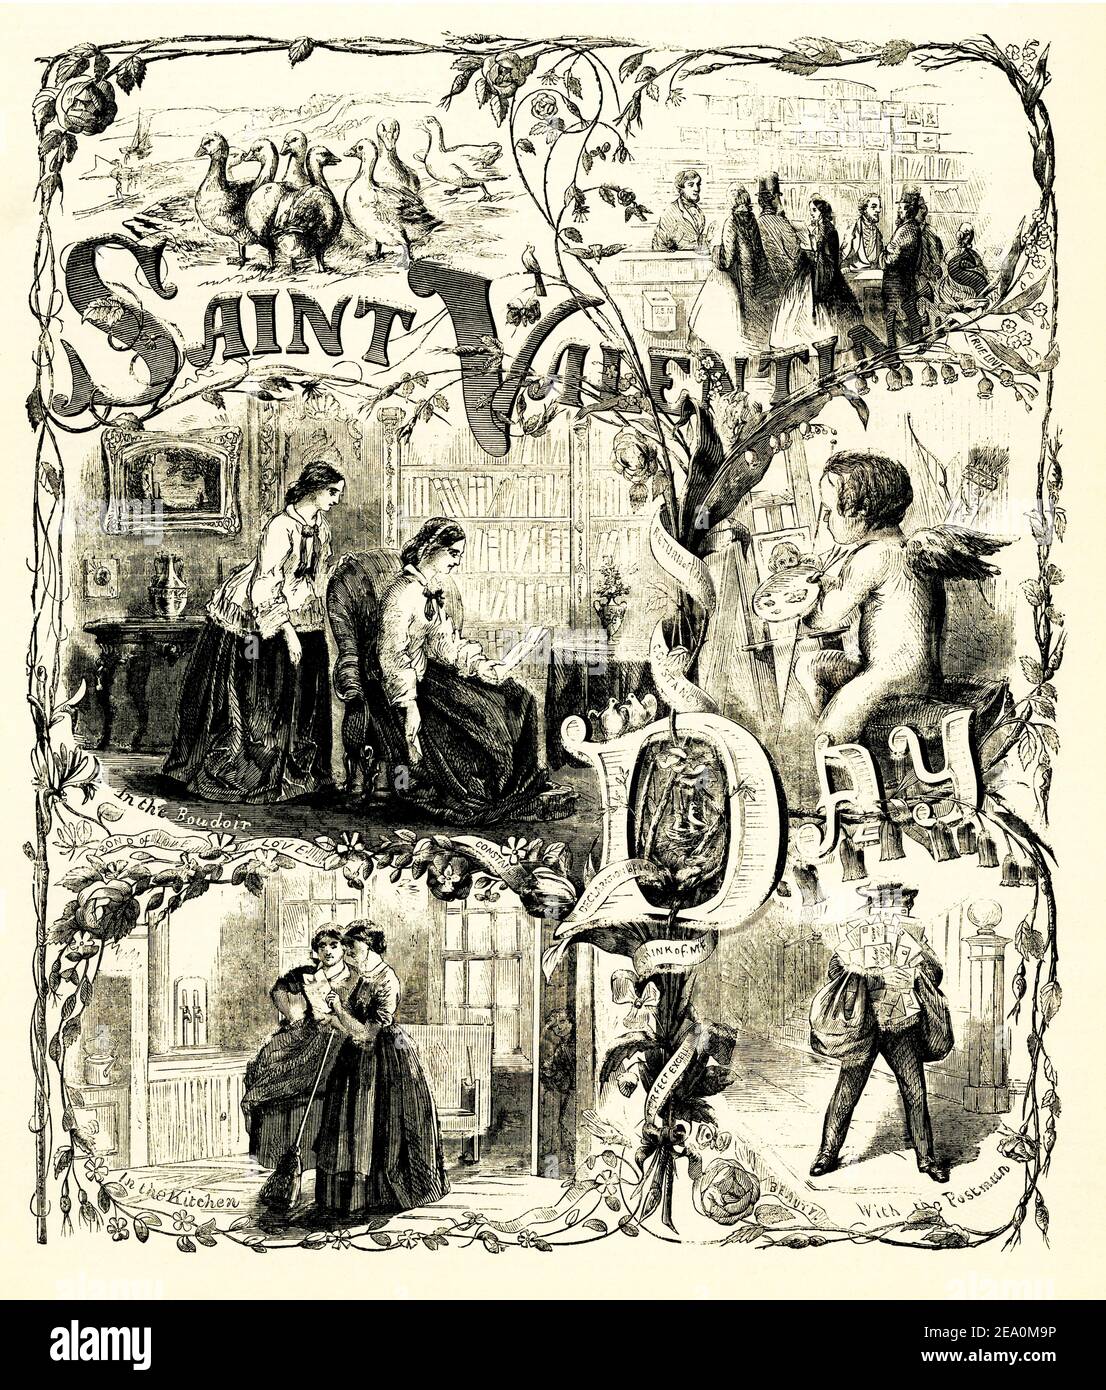 Cette illustration est intitulée: Saint Valentin. Il est tiré de Harper's Weekly vol V No 216 New York samedi 16 1861 février Banque D'Images